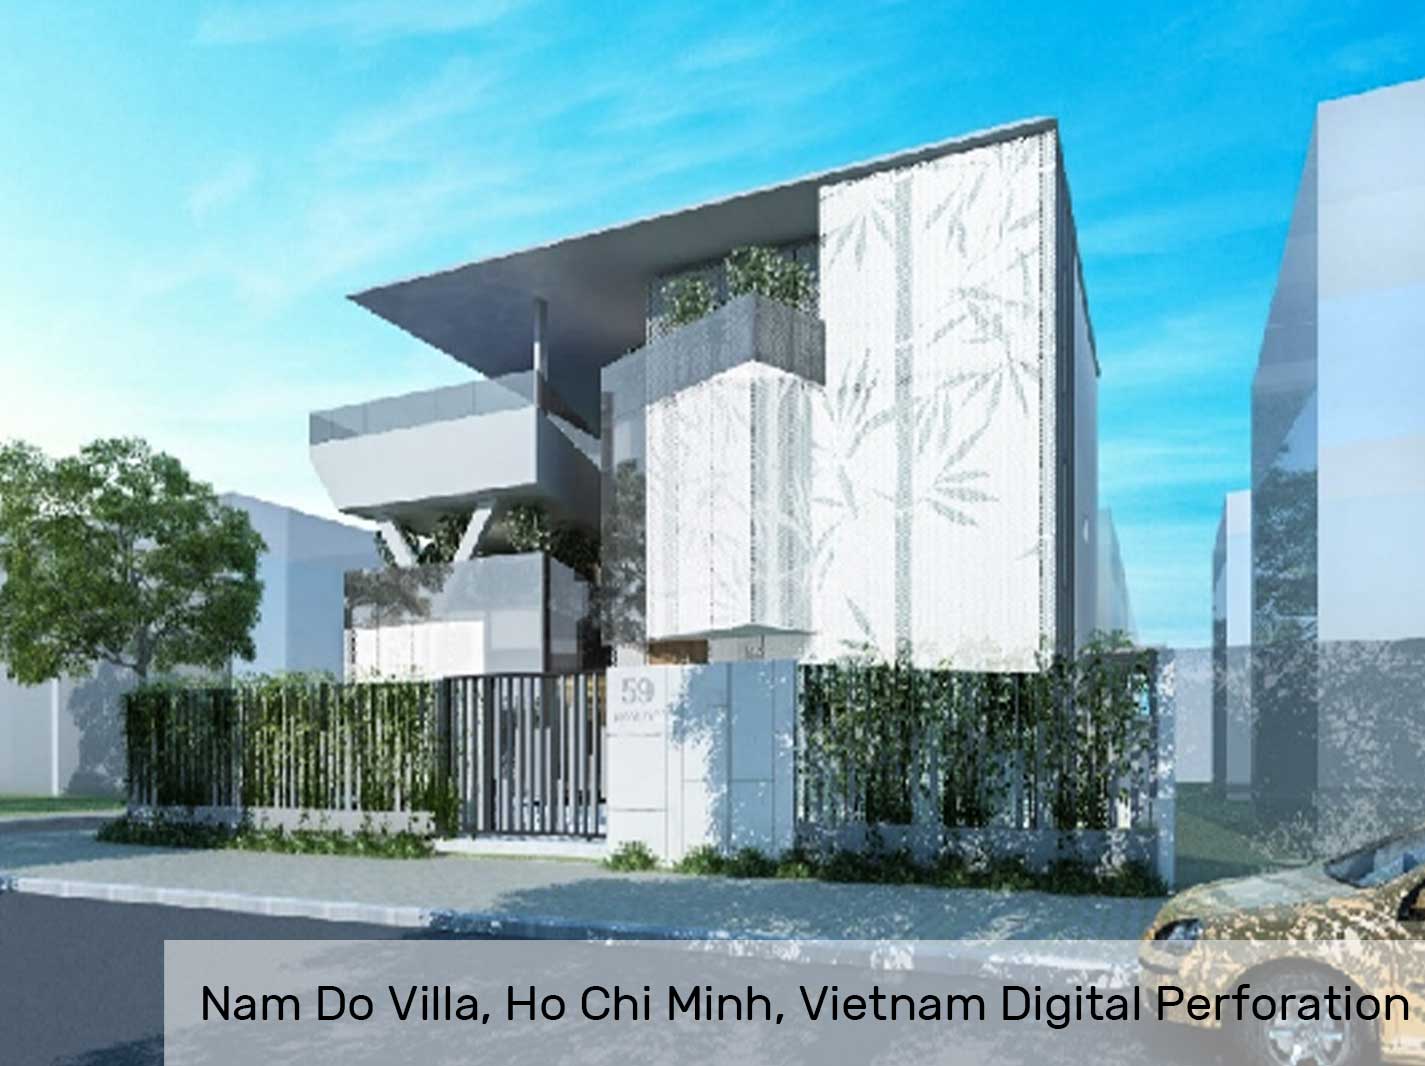 Nam Do Villa, Ho Chi Minh, Vietnam Digital Perforation